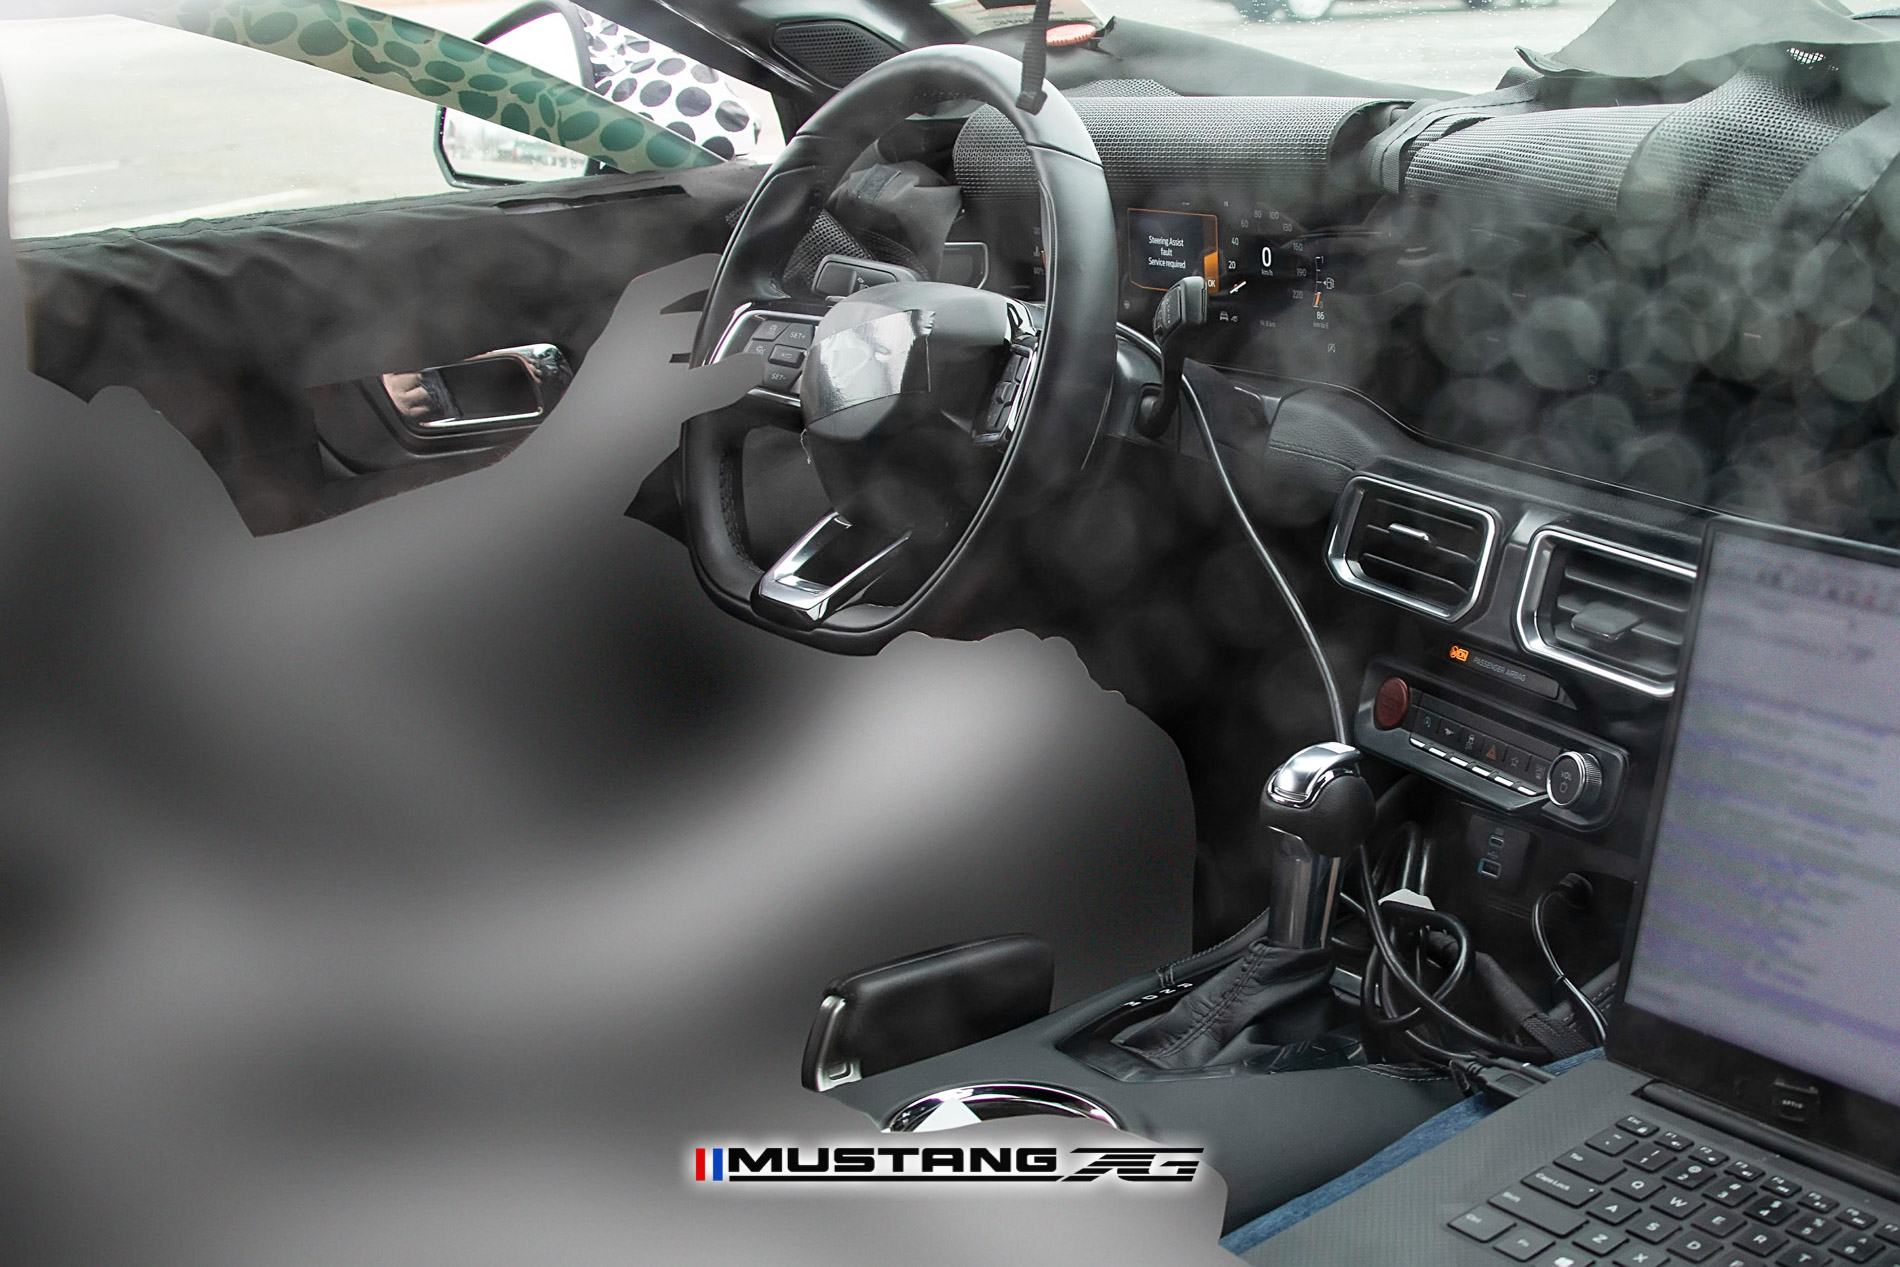 S650 Mustang S650 Mustang INTERIOR First Look Spyshots! + More Exterior Shots S650 2023 Mustang EcoBoost Interior Spyshot 26